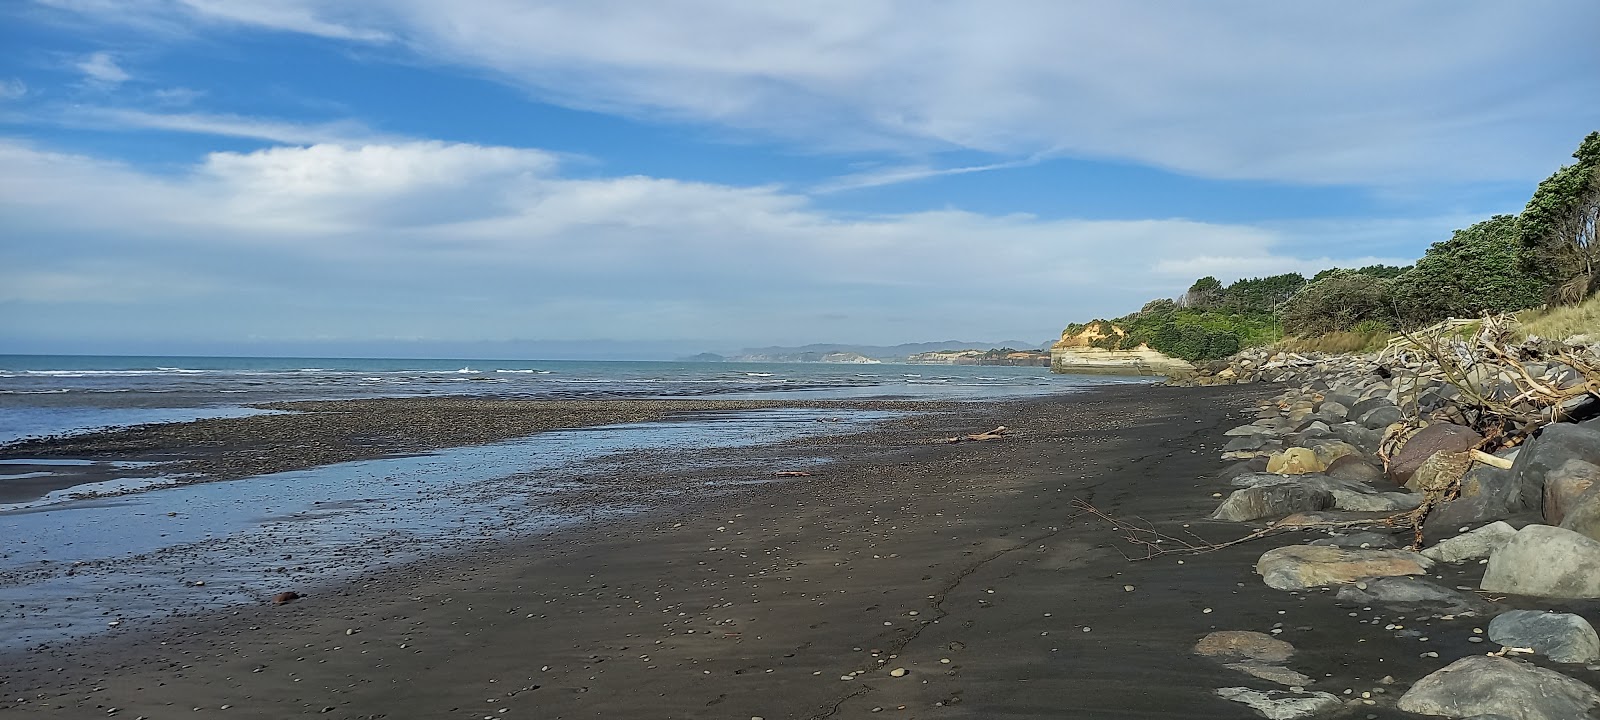 Foto av Urenui Beach och bosättningen